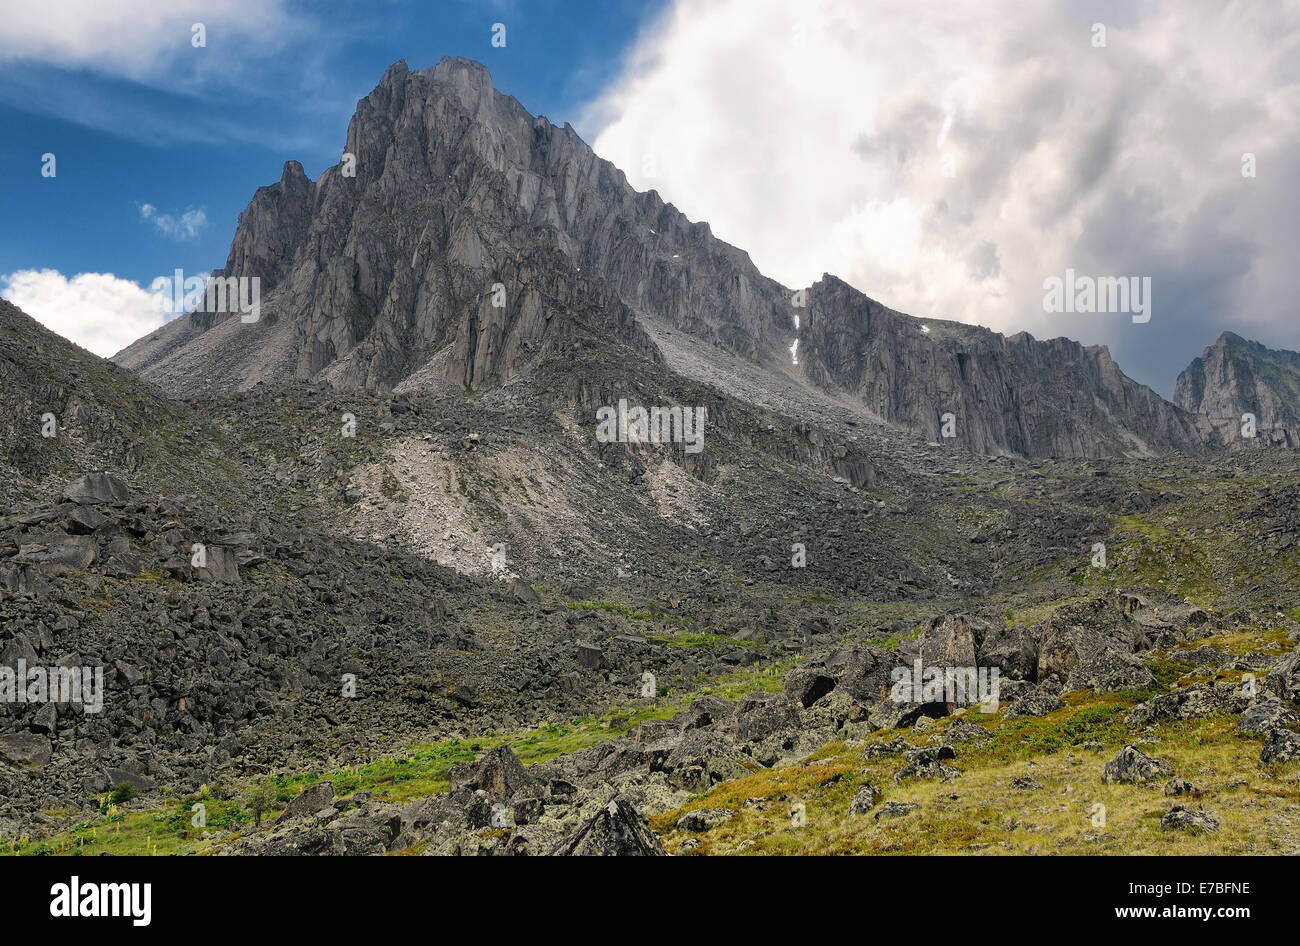 Landscape with a mountain peak. Peak Barun. Tunka range. Eastern Sayan. Republic of Buryatia Stock Photo